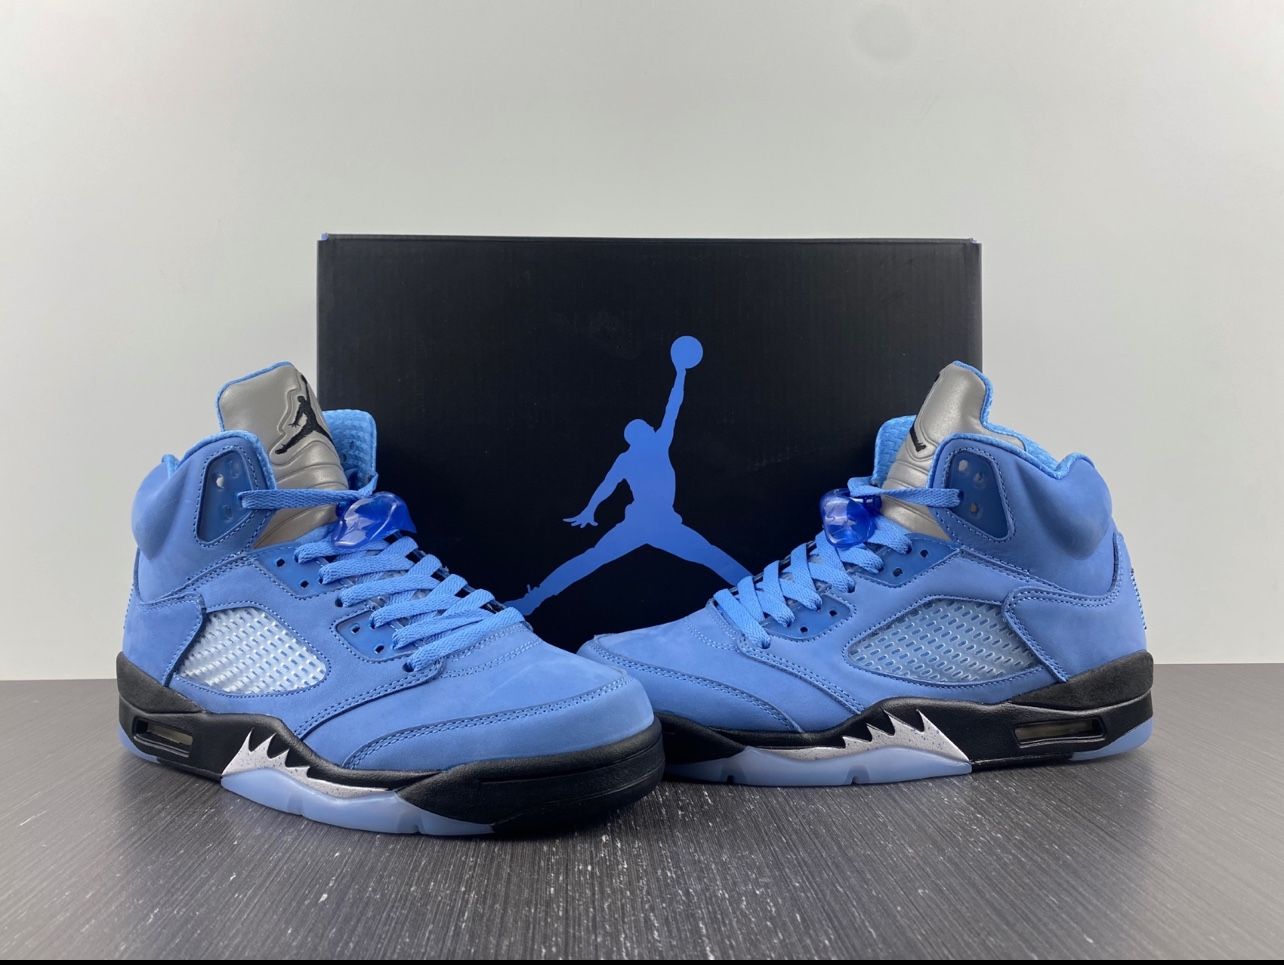 Air Jordans 5 “unc” Size 11 $250